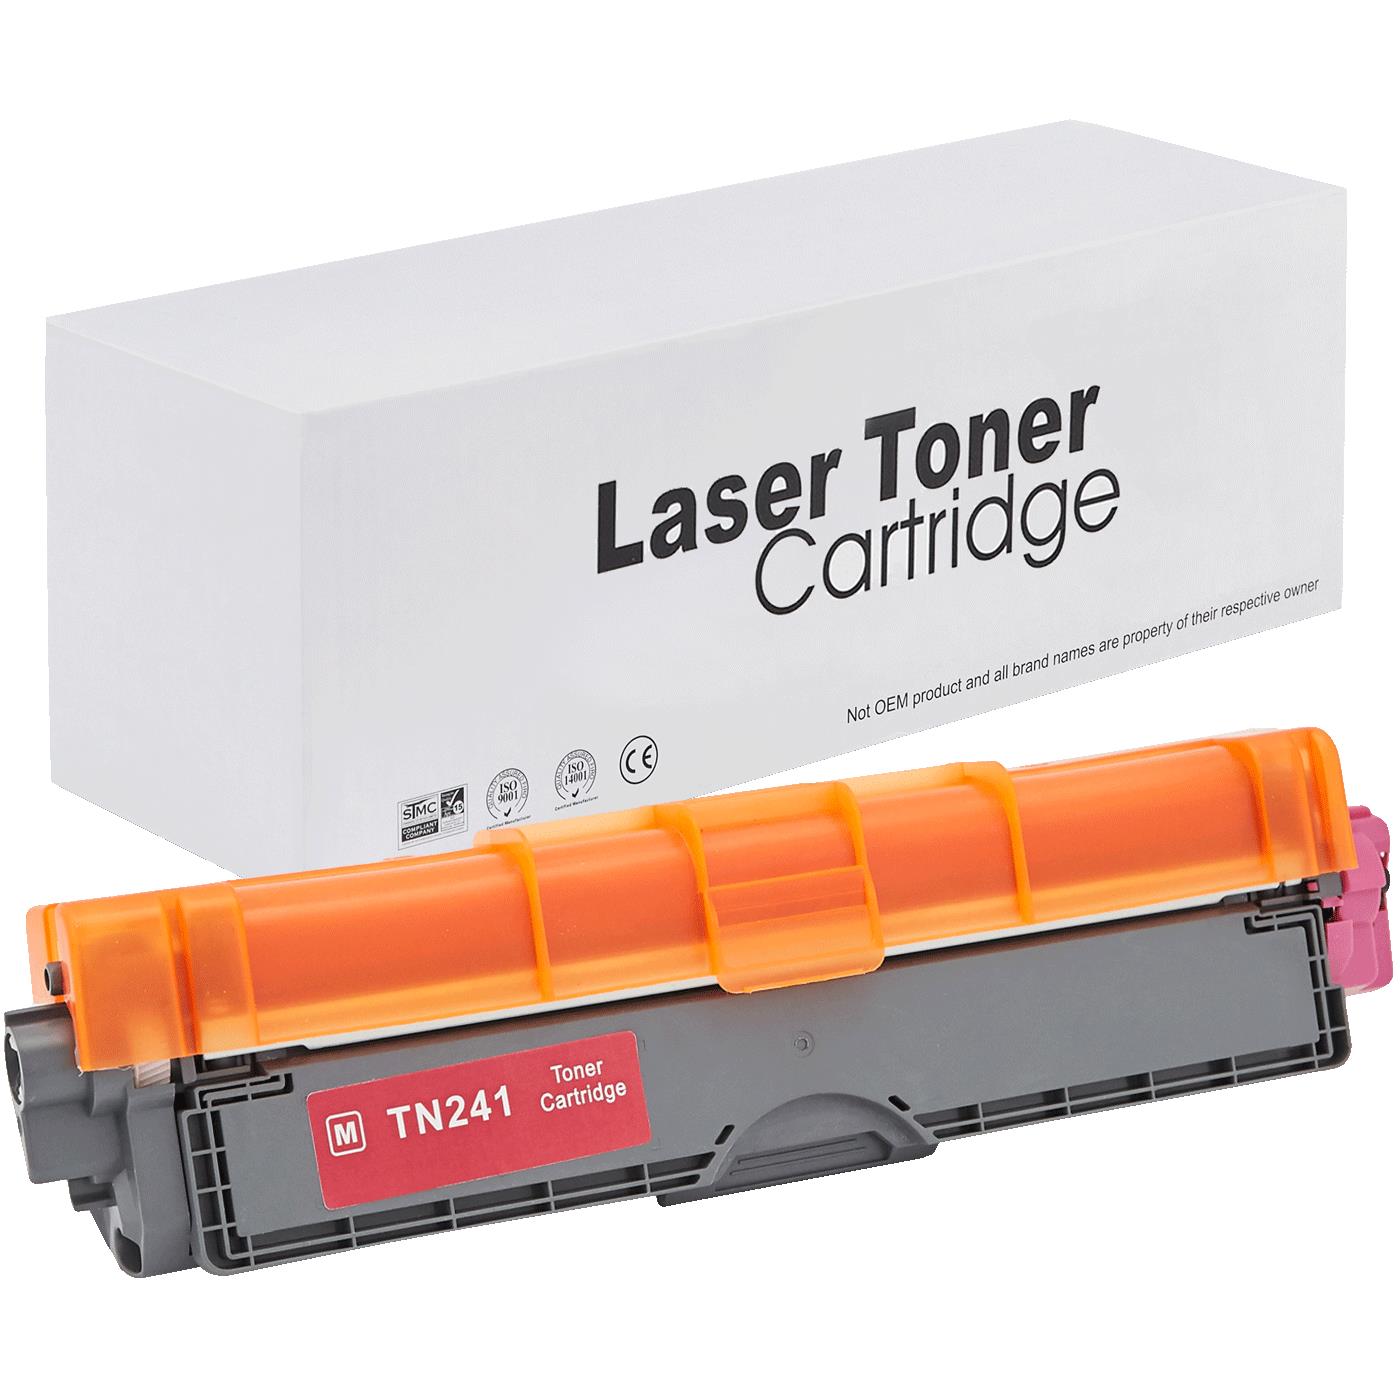 съвместима тонер касета за принтери и печатащи устройства на Brother DCP-9020 CDW Toner BR-241M | TN241M. Ниски цени, прецизно изпълнение, високо качество.